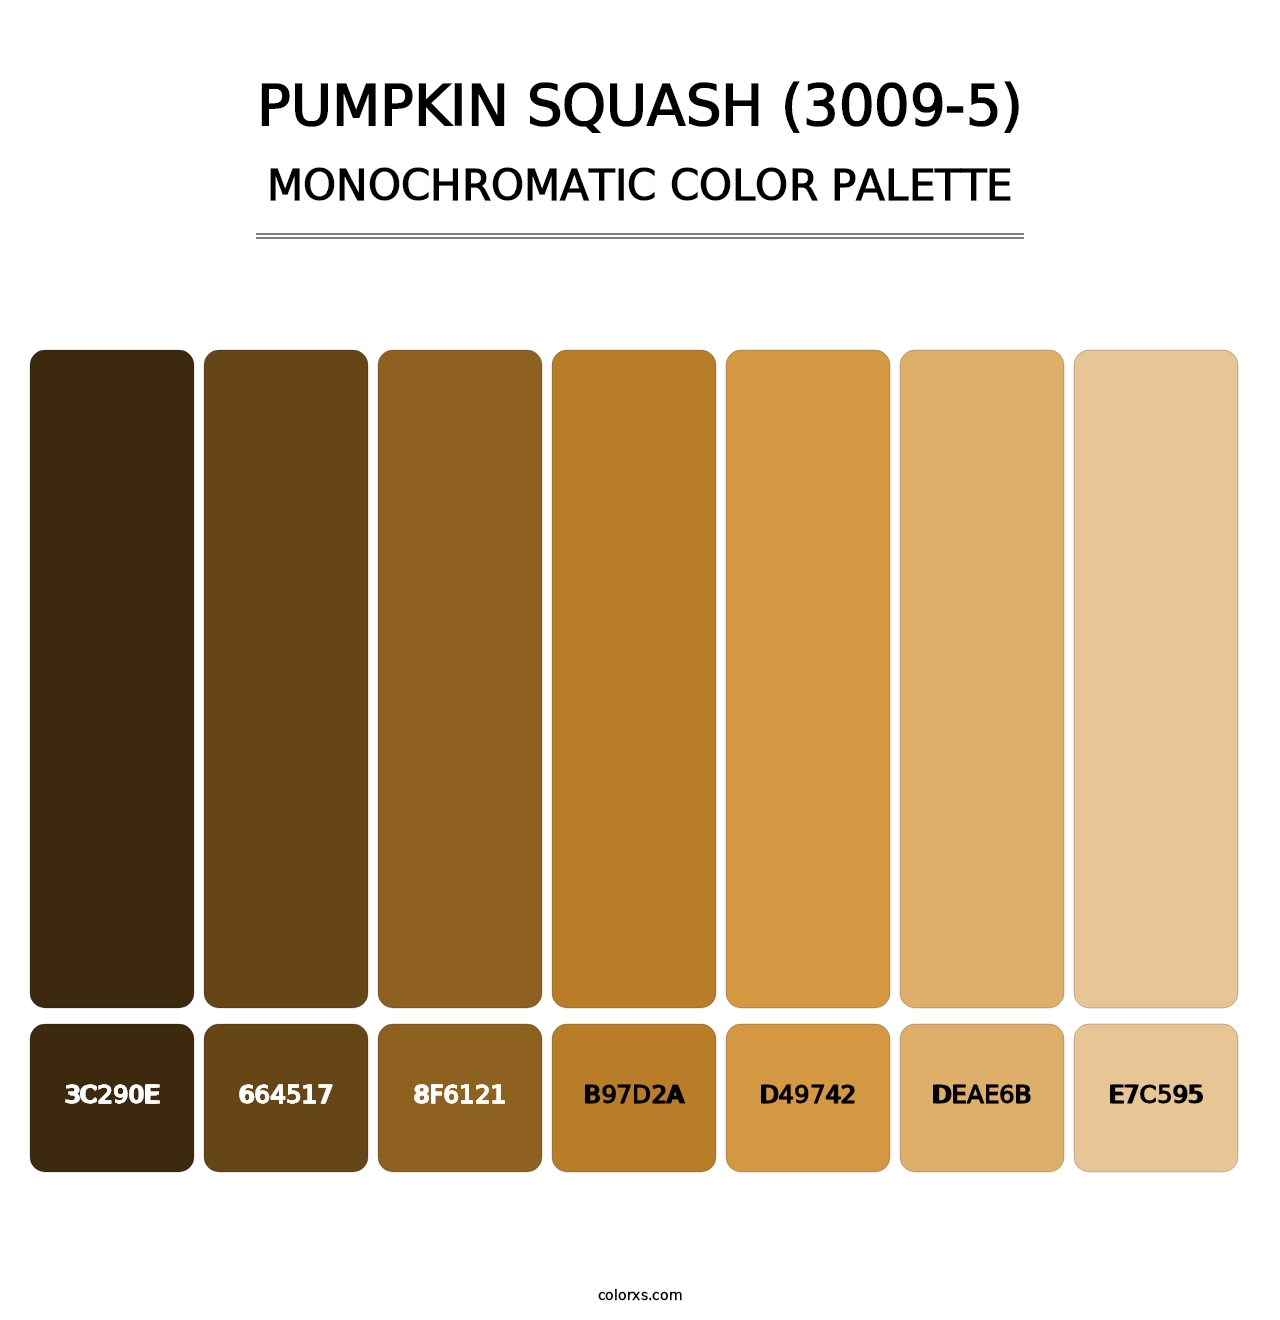 Pumpkin Squash (3009-5) - Monochromatic Color Palette